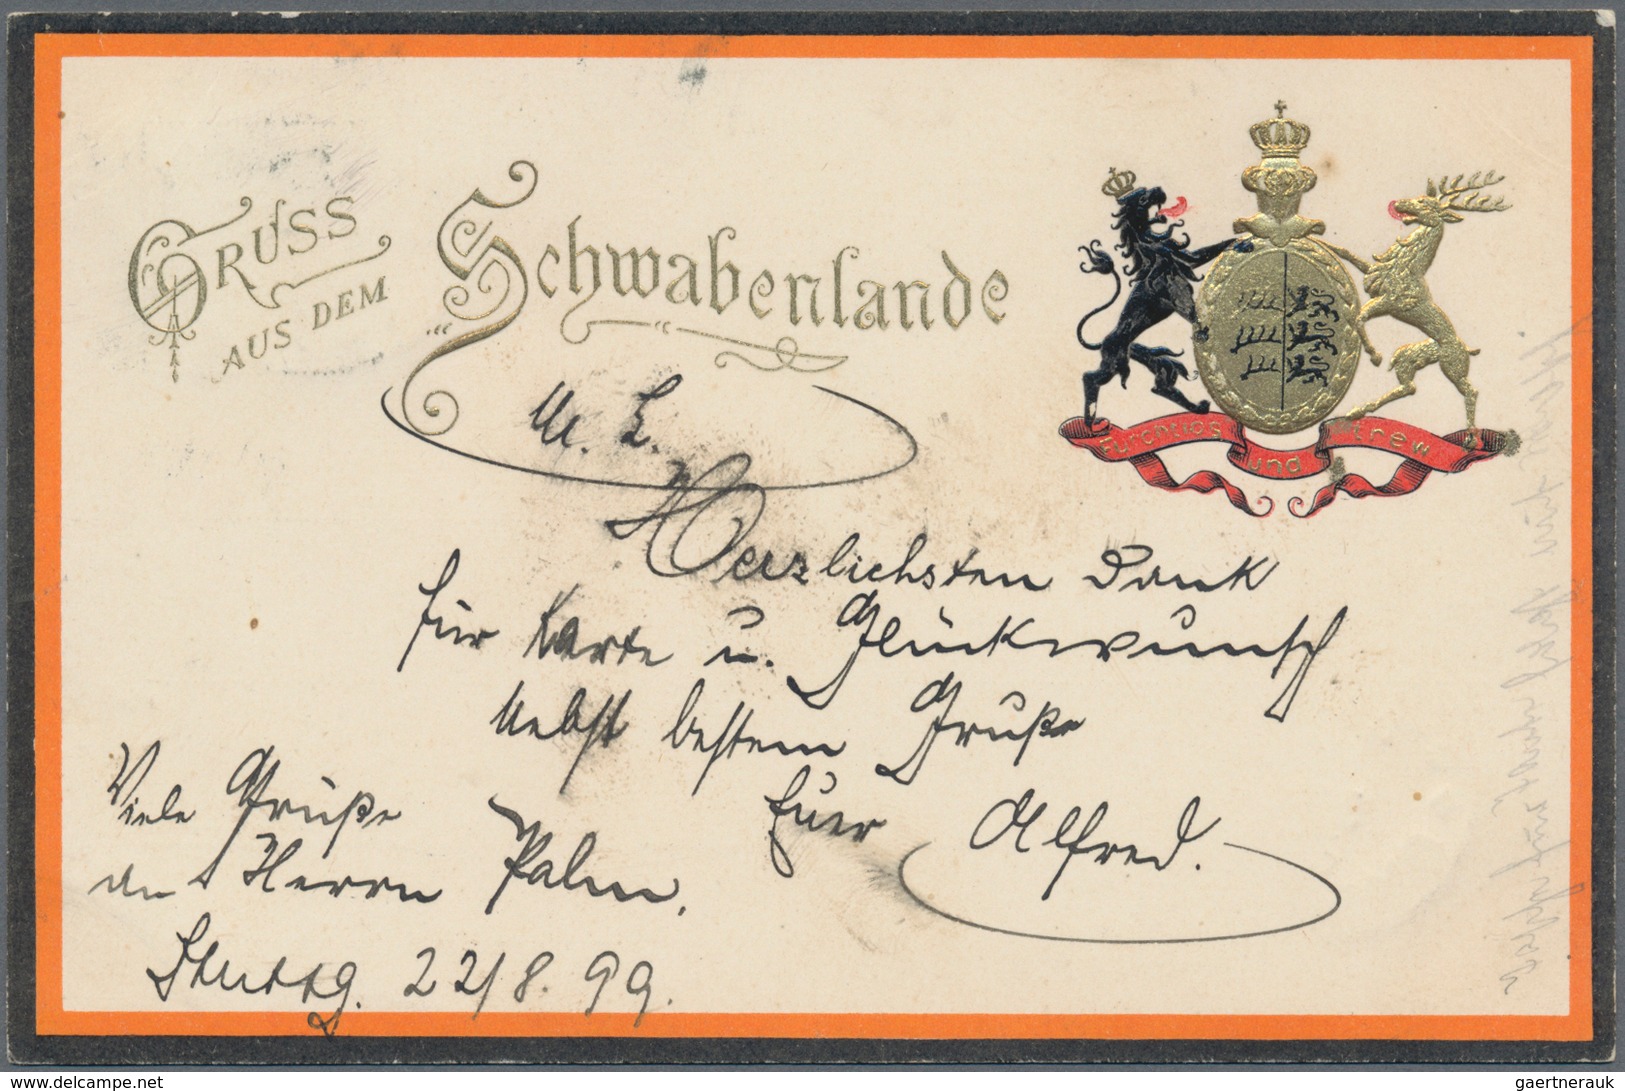 21670 Ansichtskarten: Baden-Württemberg: 1899/1910, Sammlung von 50 Karten verschiedener württembergischer